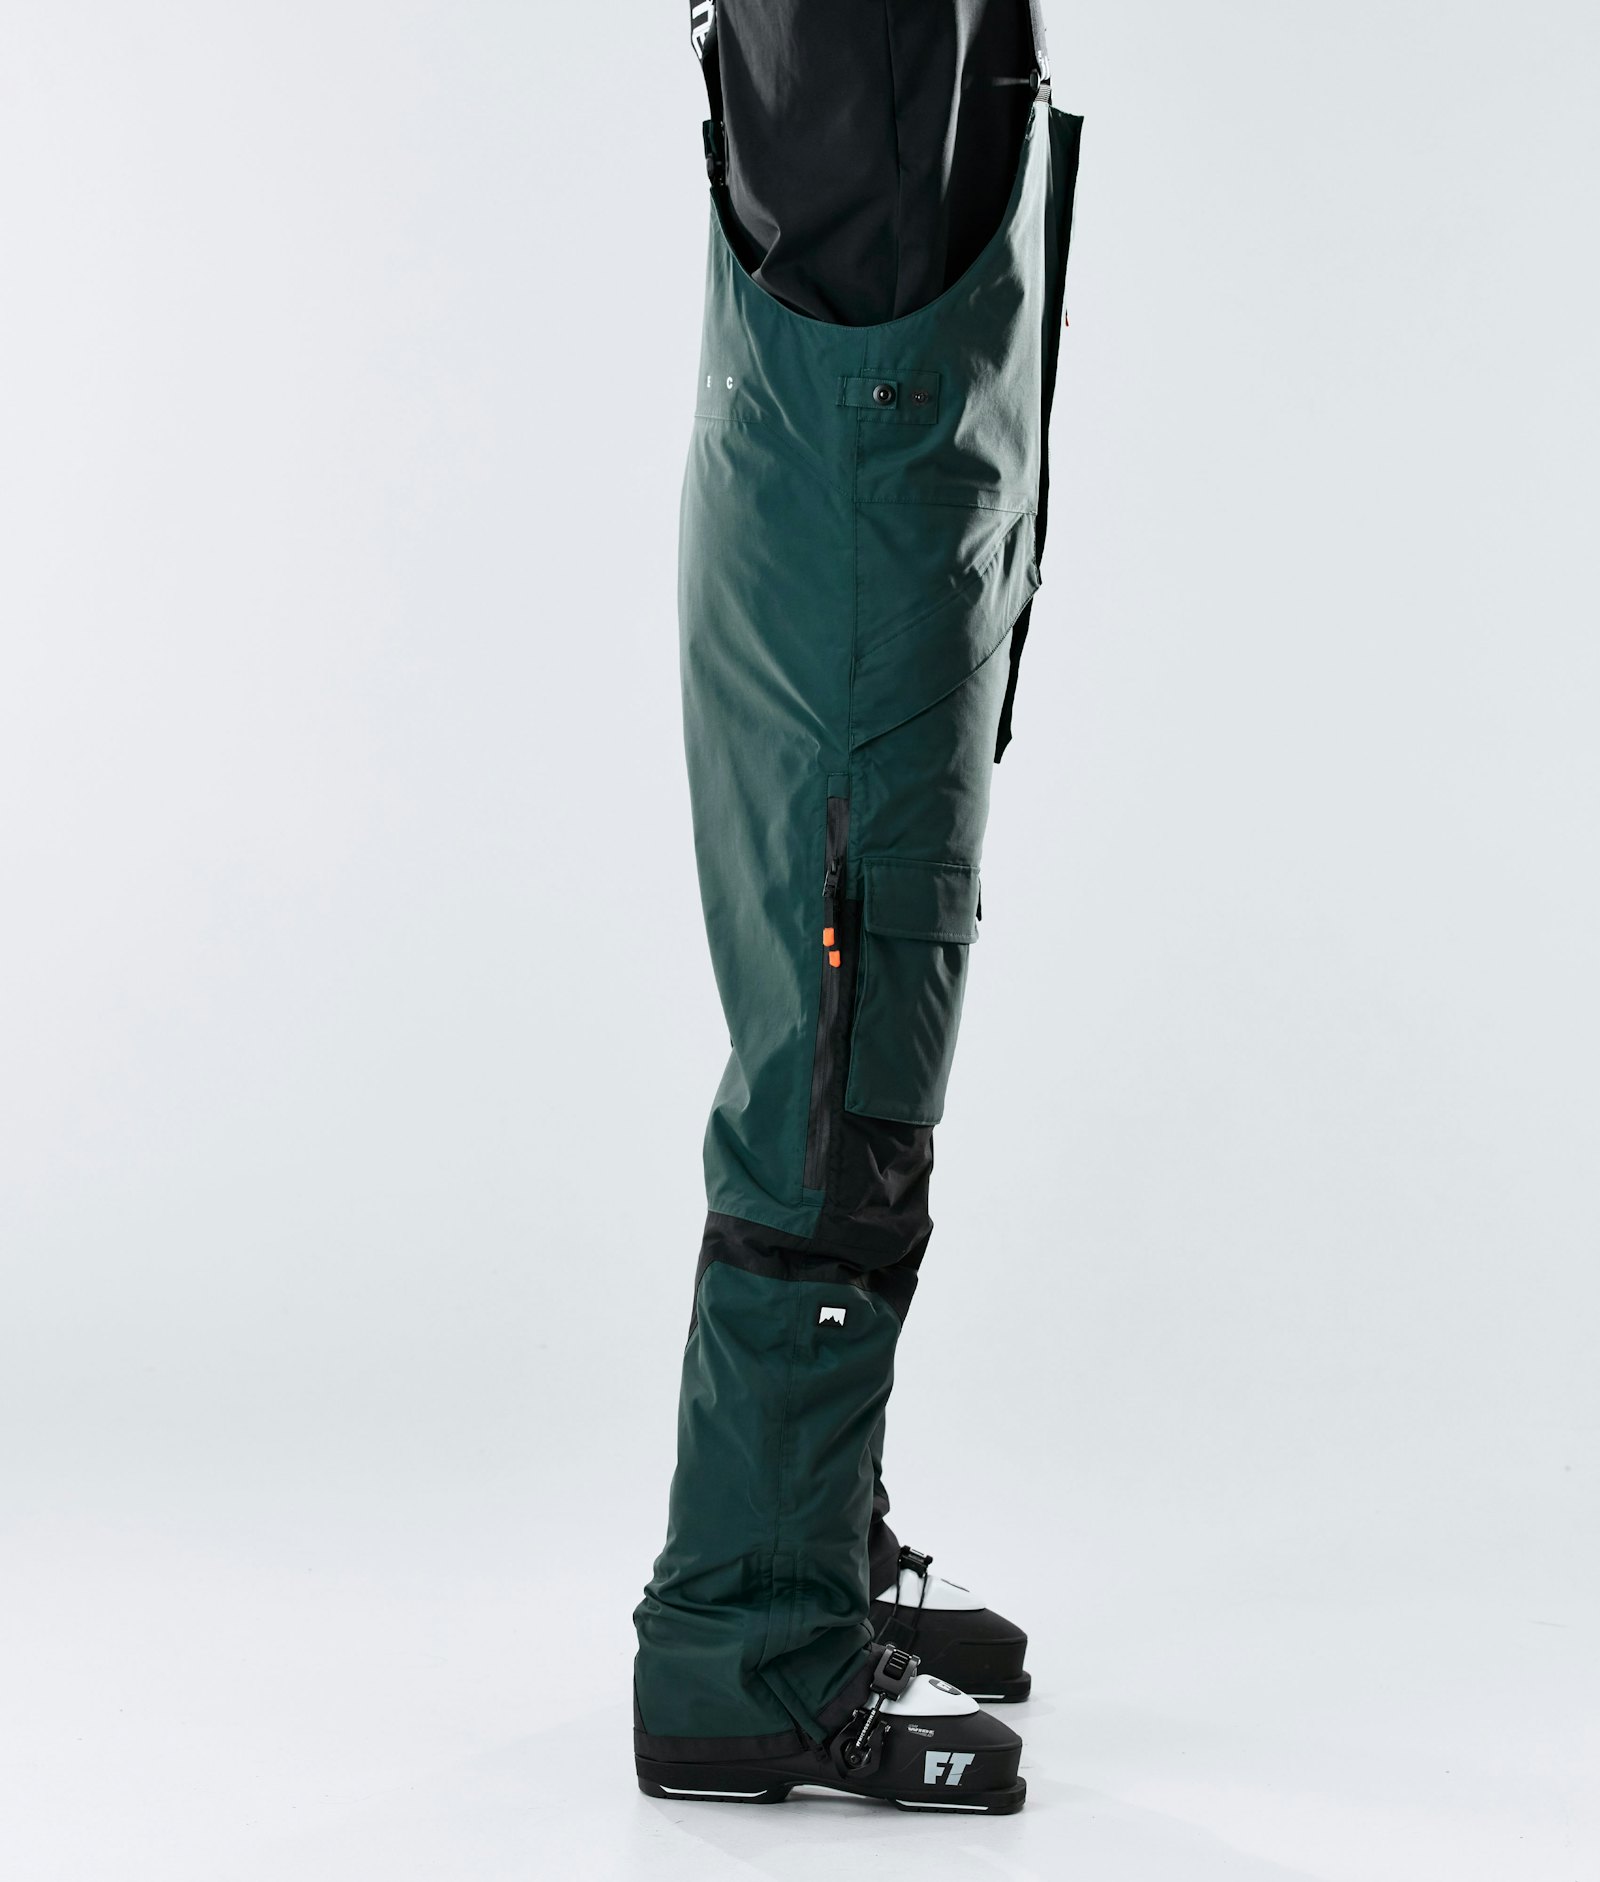 Fawk 2020 Pantalon de Ski Homme Dark Atlantic/Black